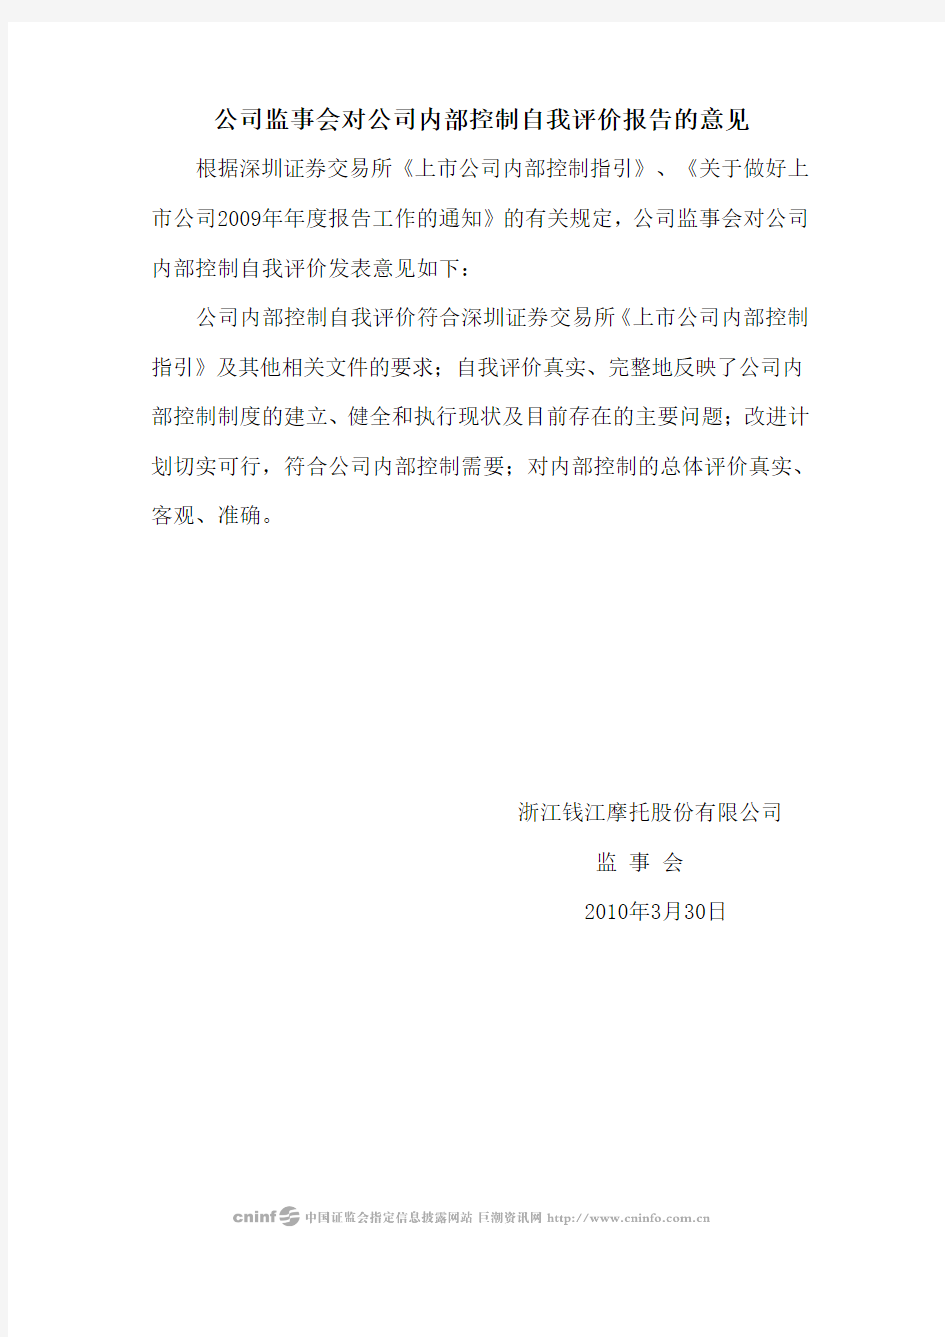 钱江摩托：公司监事会对公司内部控制自我评价报告的意见 2010-03-31